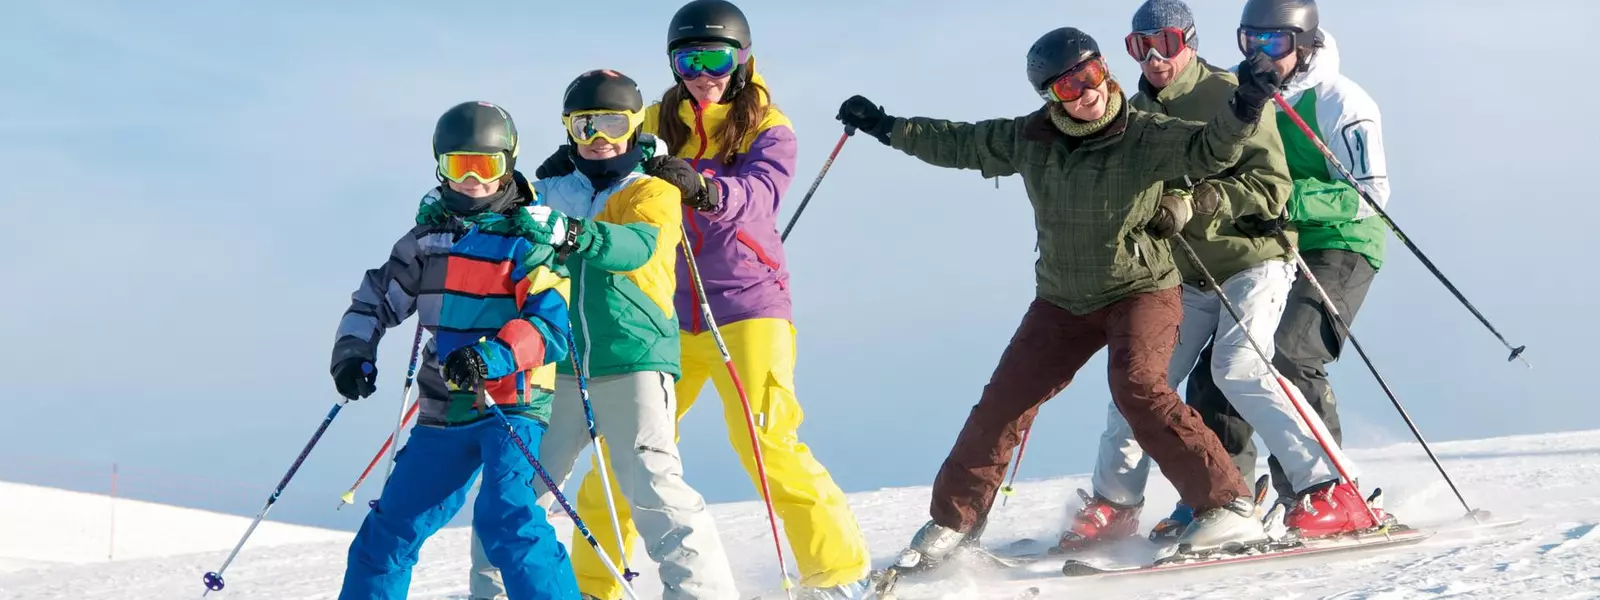 Gruppe Skifahrer – Kinder und Erwachsene